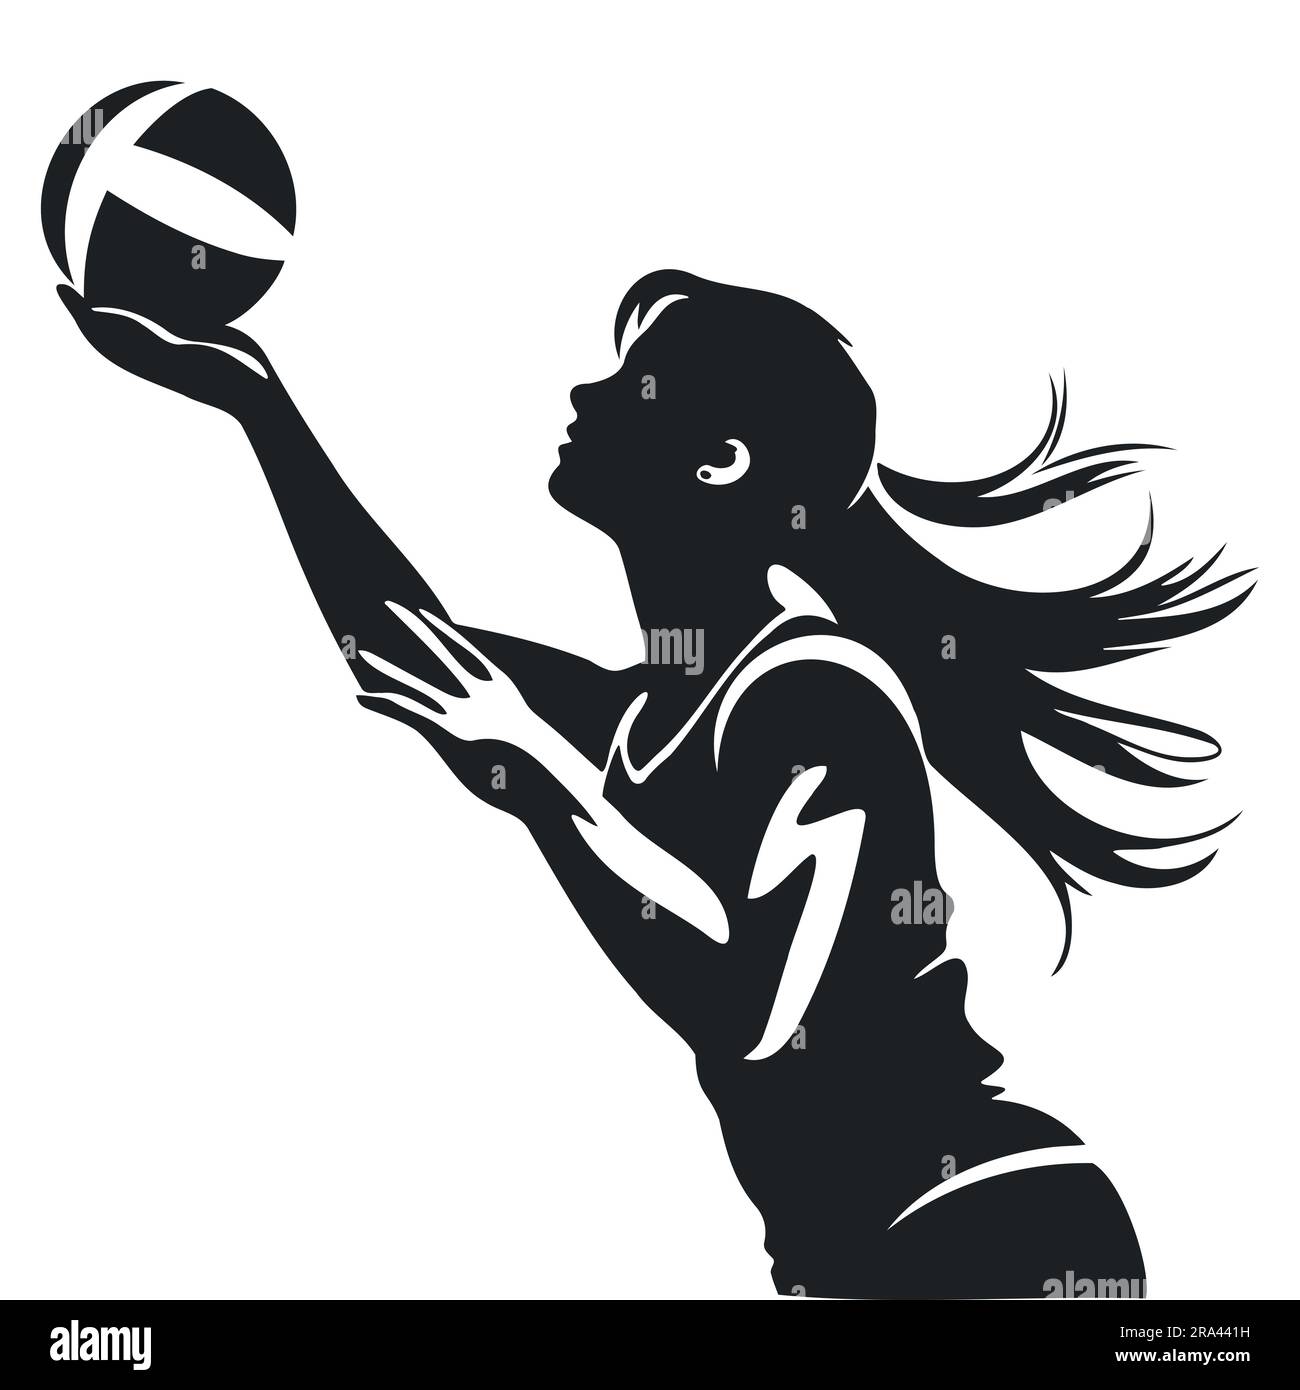 Silhouette vectorielle d'une fille avec un ballon joue au volley Illustration de Vecteur